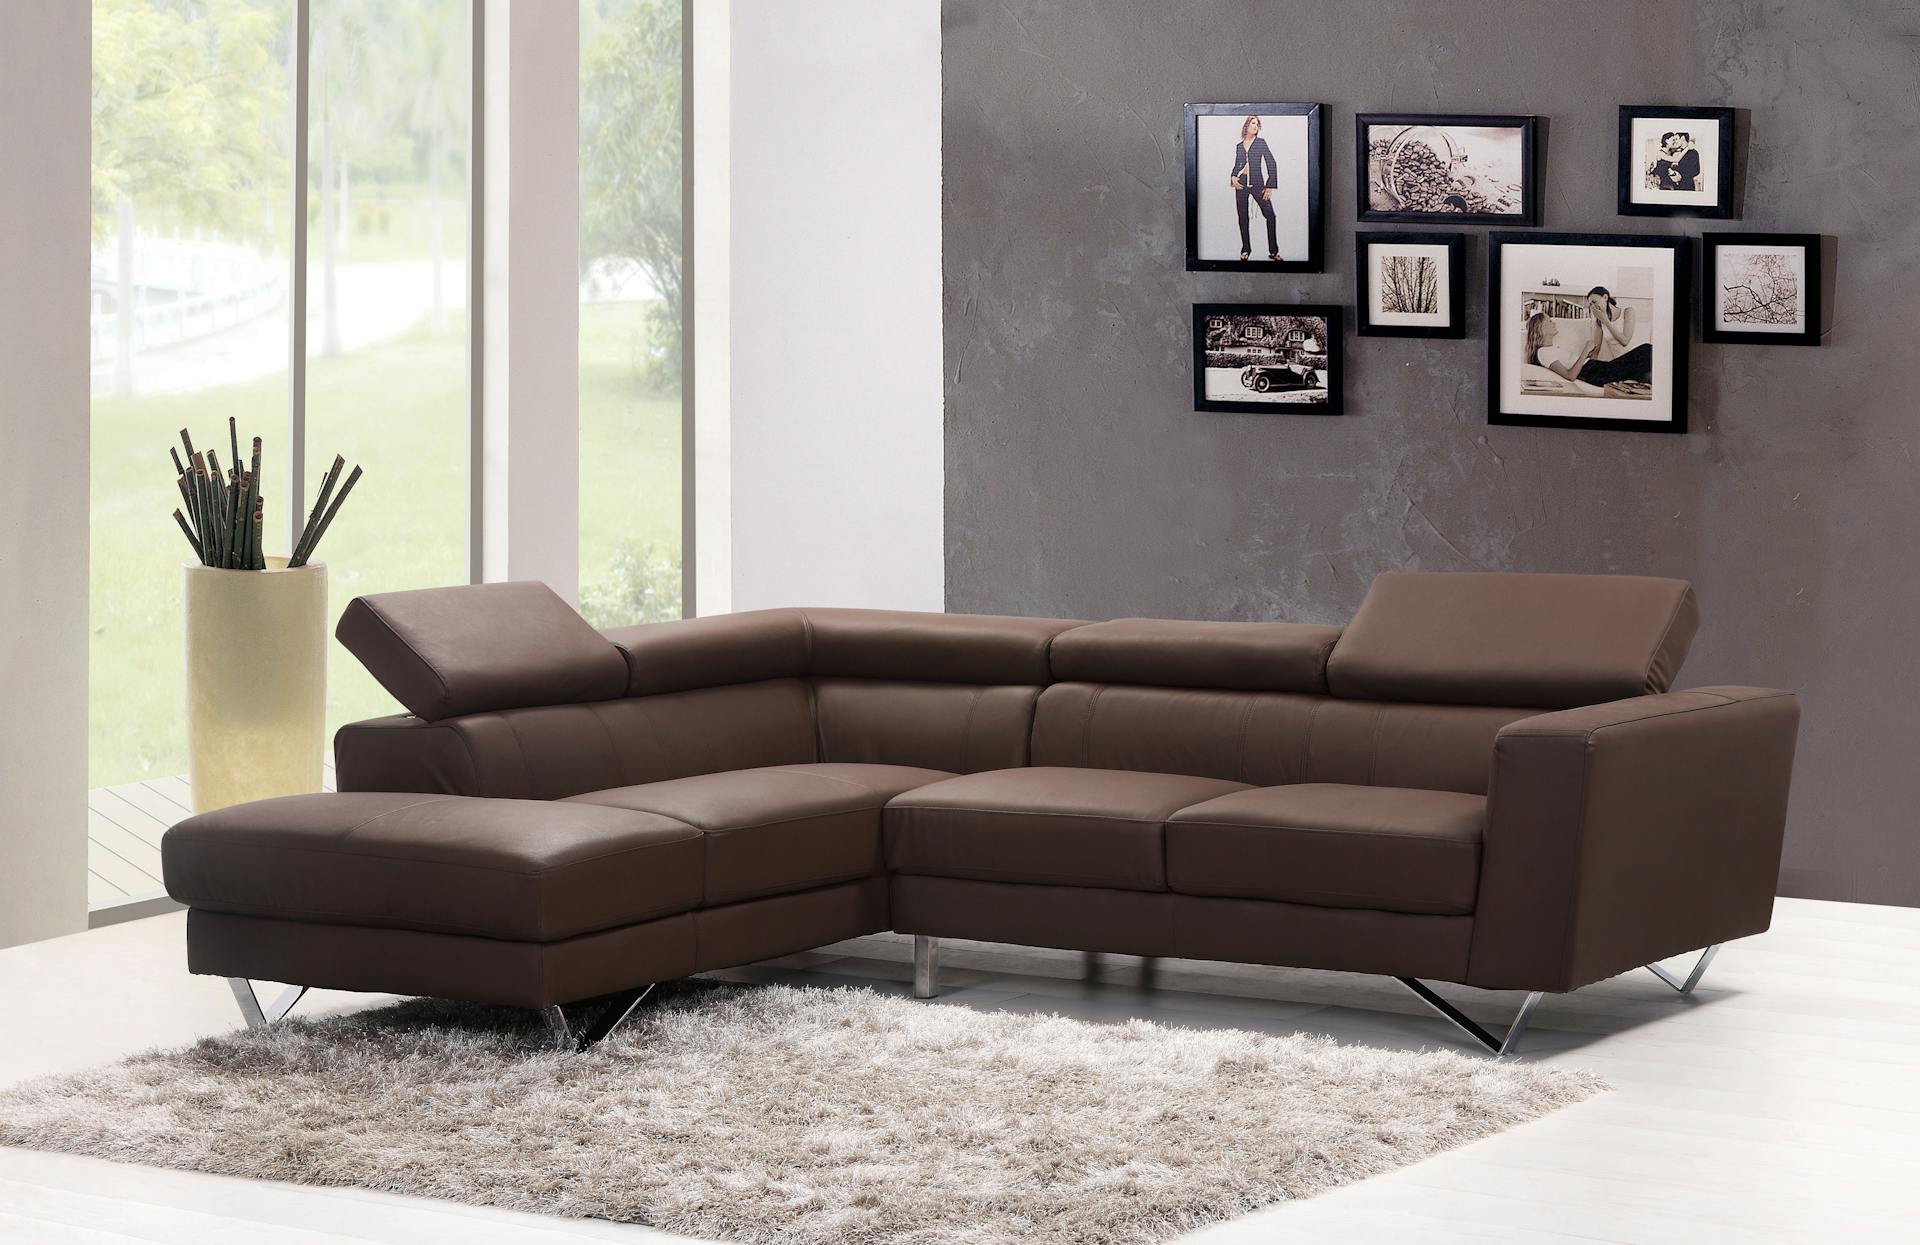 Qual o melhor lugar para comprar sofá?